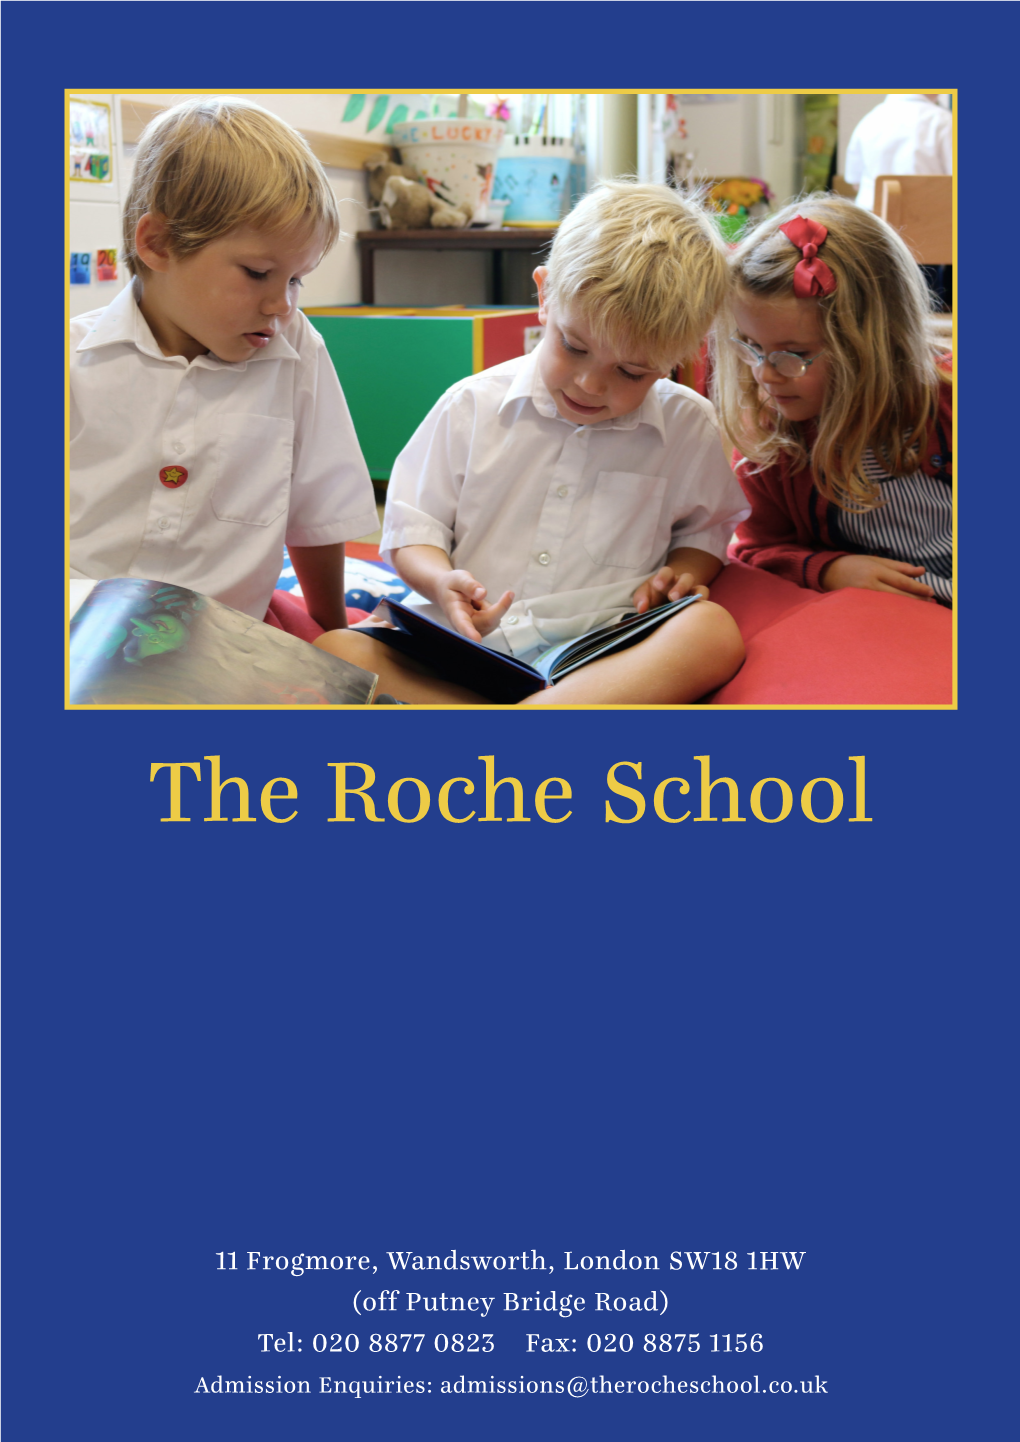 The Roche School